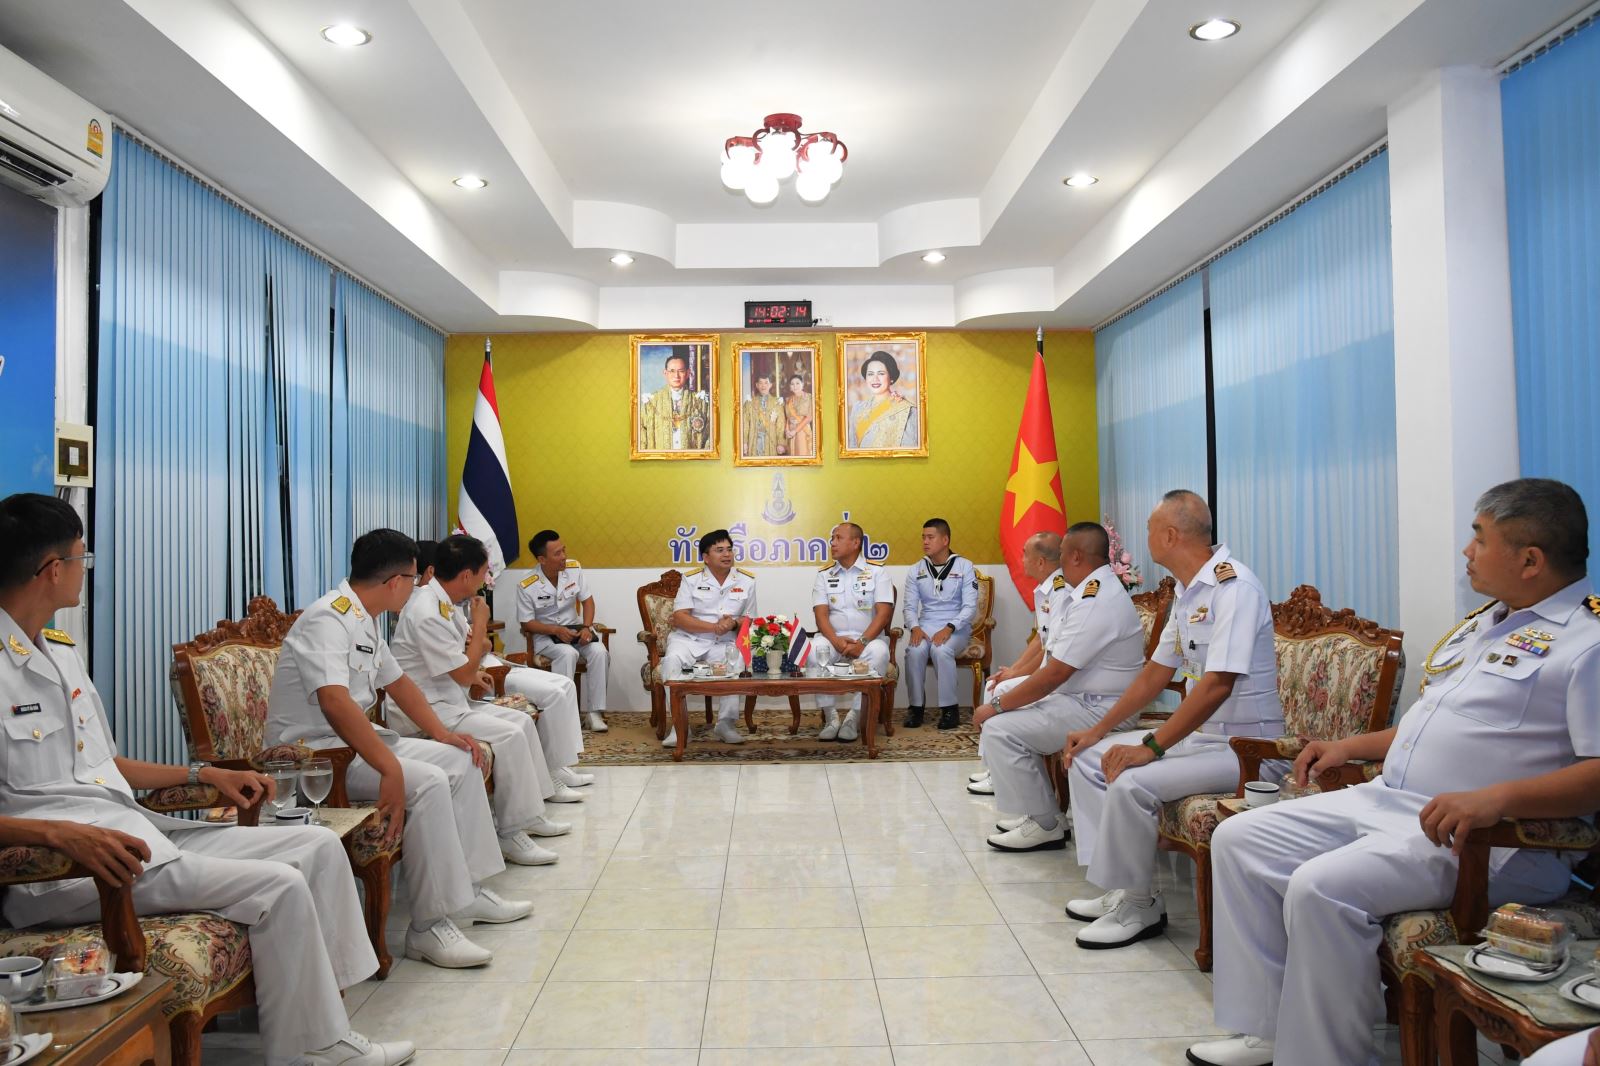 Chuẩn Đô đốc Tha-oát-chai Pim-mương, Phó Tư lệnh Vùng 2 Hải quân Hoàng gia Thái Lan tiếp xã giao đoàn công tác Vùng 5 Hải quân nhân dân Việt Nam.